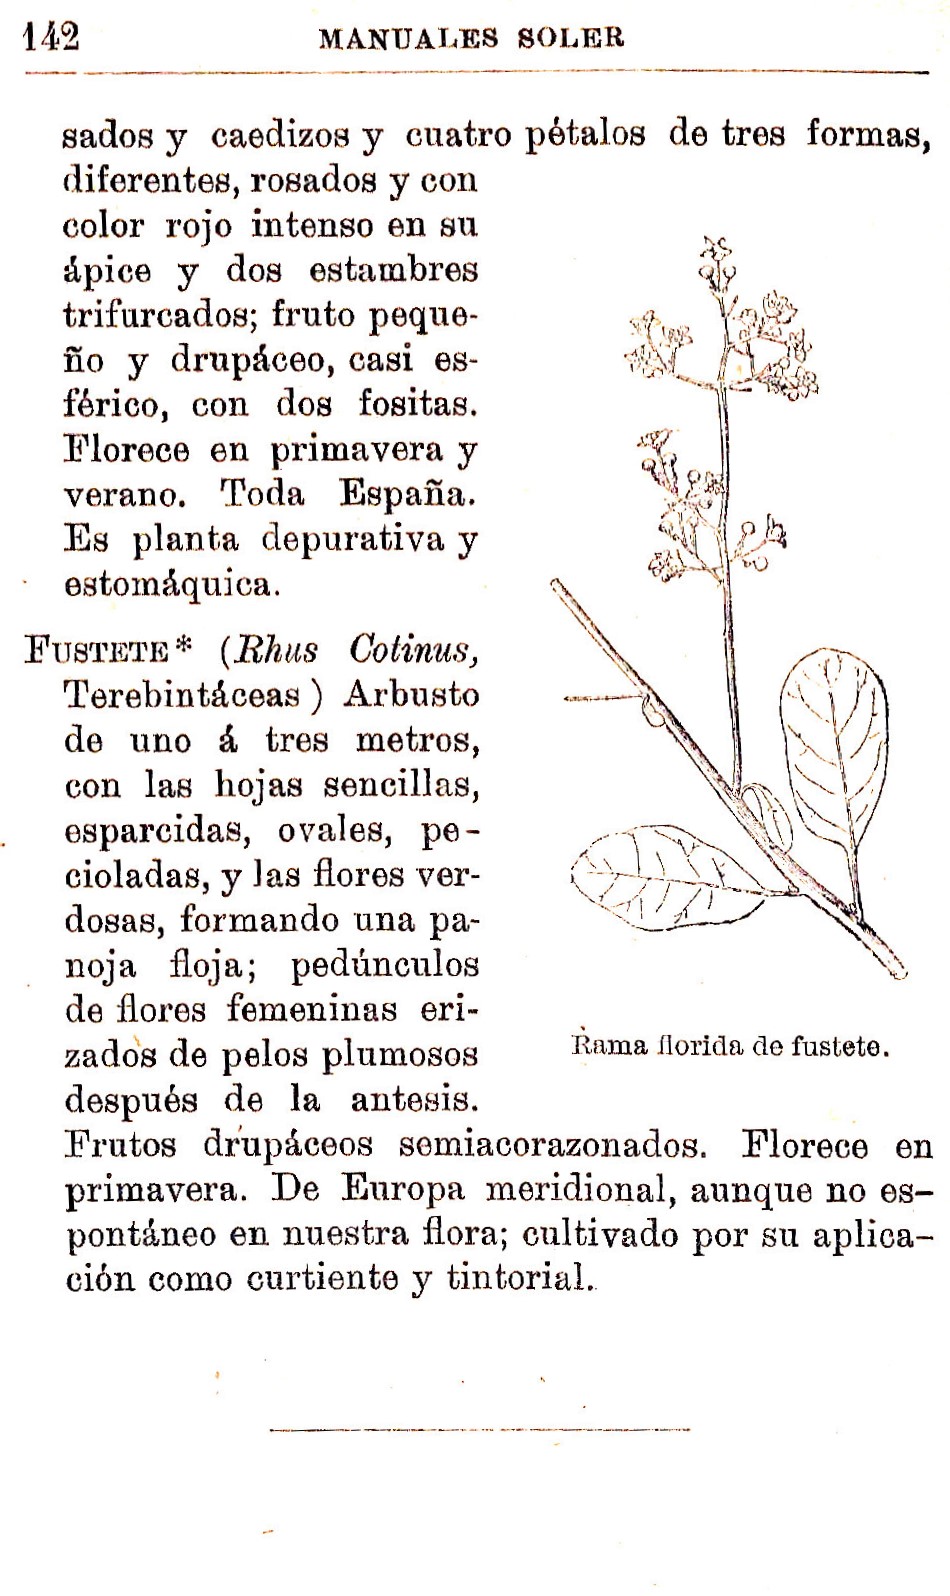 Plantas Medicinales. Blas Lazaro Ibiza. Índice alfabético de plantas. F. Fustete.